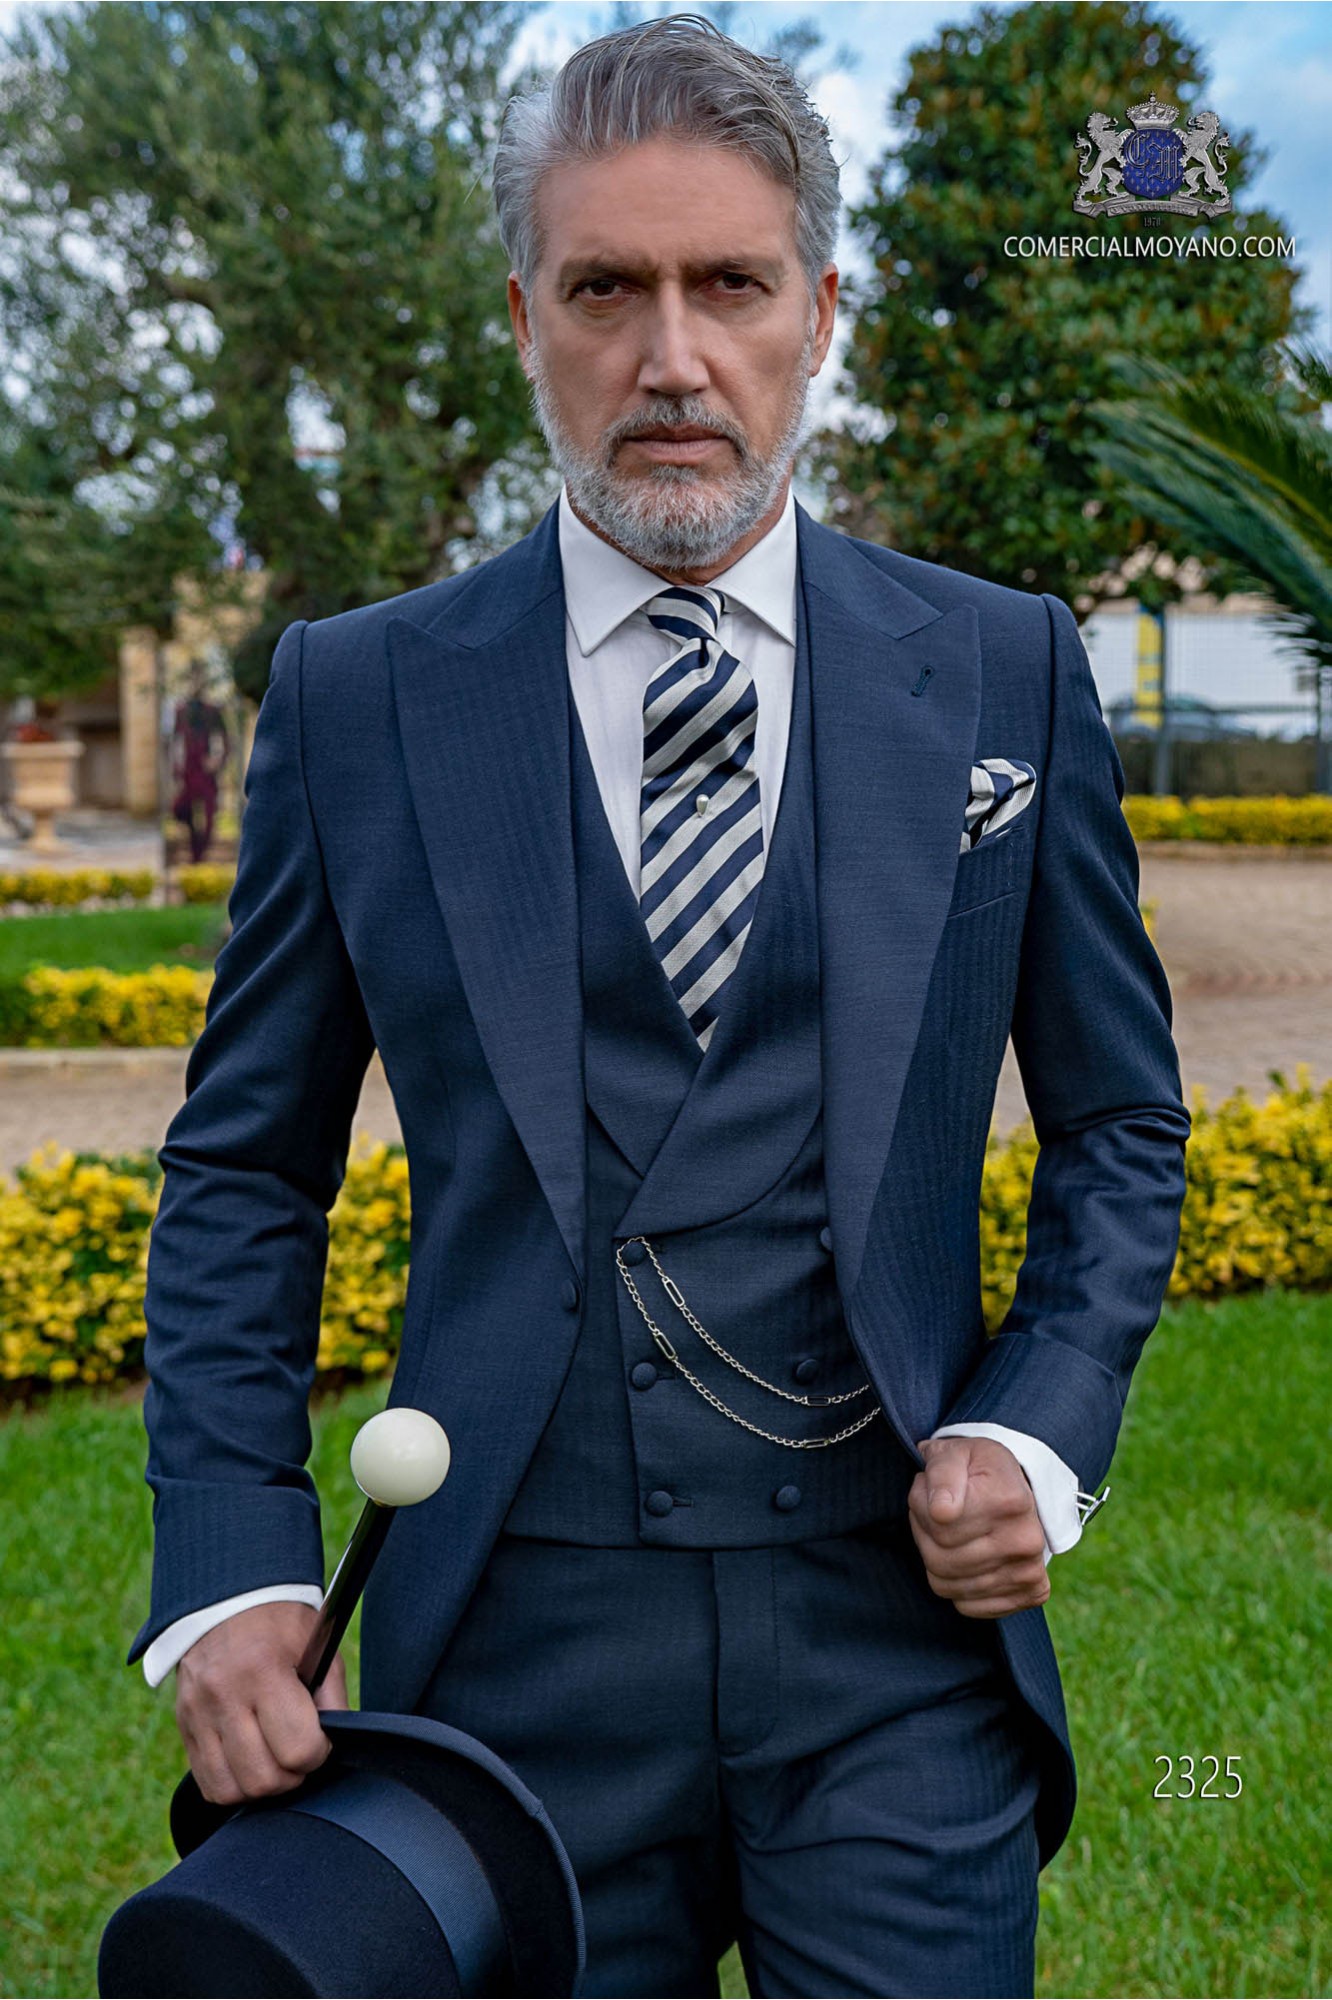 Chaqué de novio azul tejido con diseño de raya de espiga modelo: 2325 Mario Moyano colección Gentleman